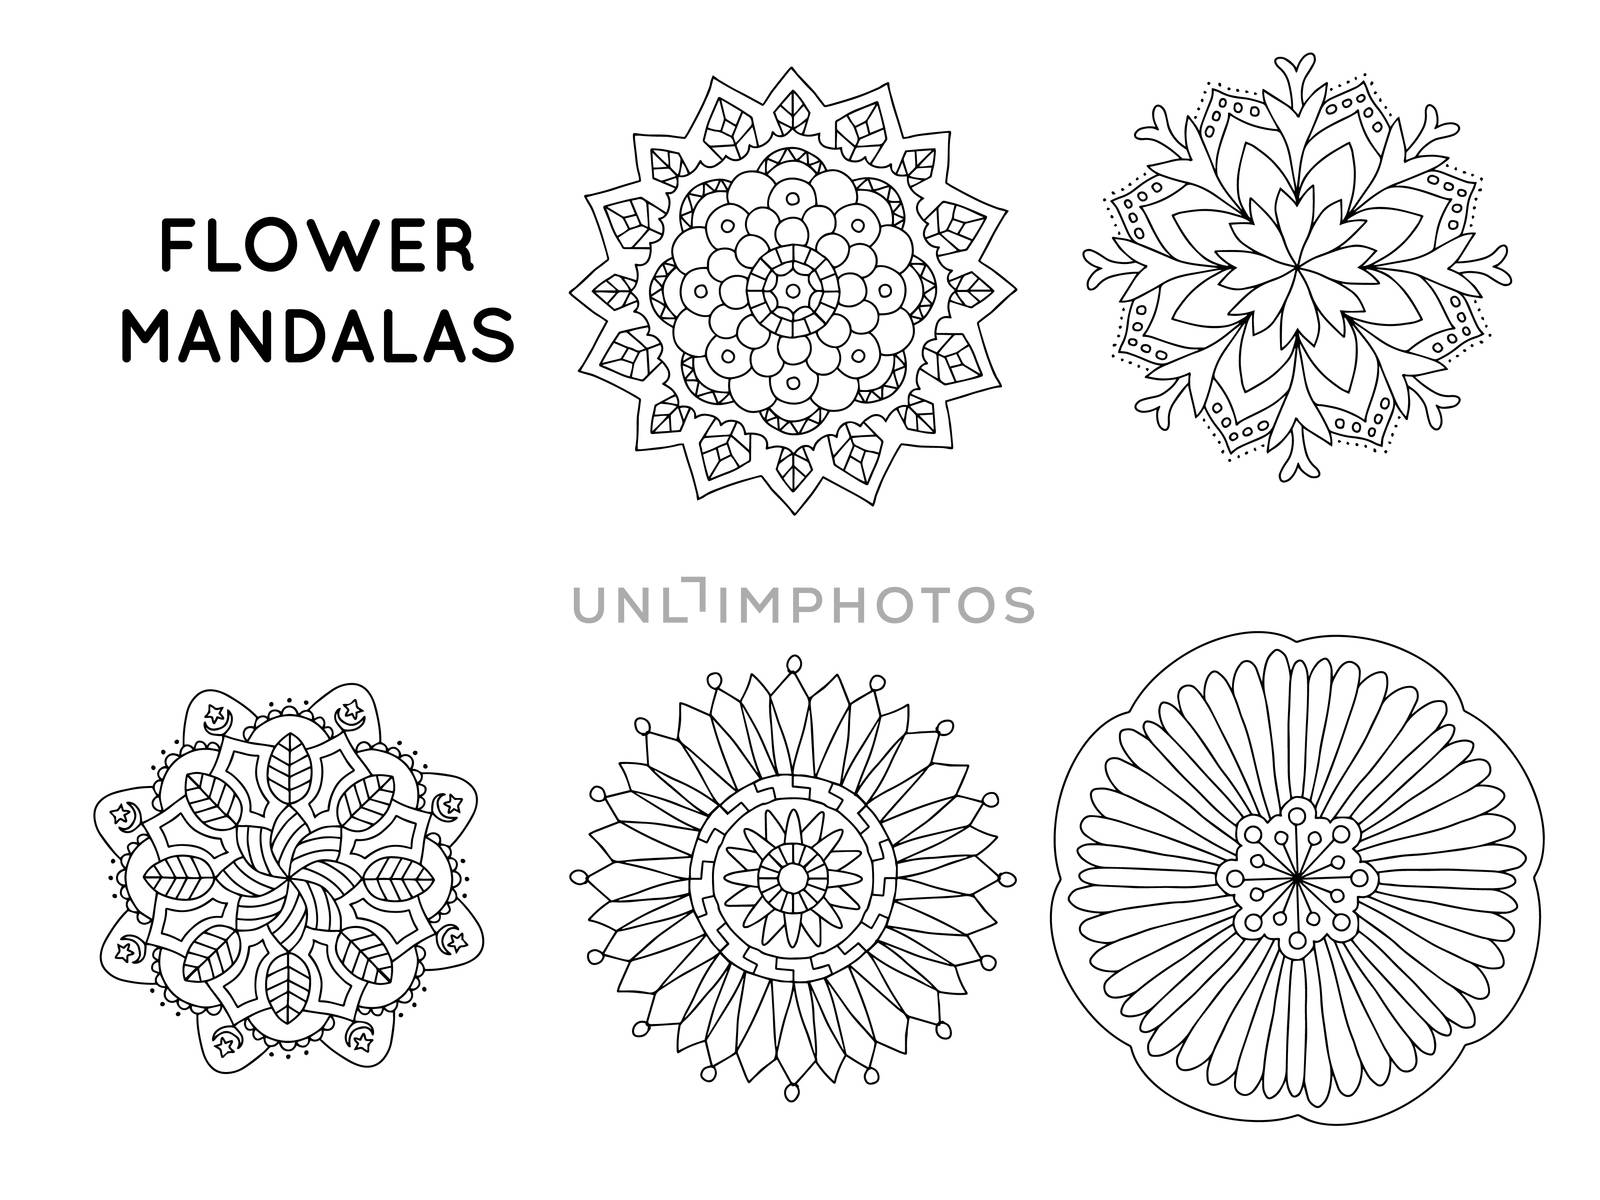 Mandalas patterns by nongpimmy